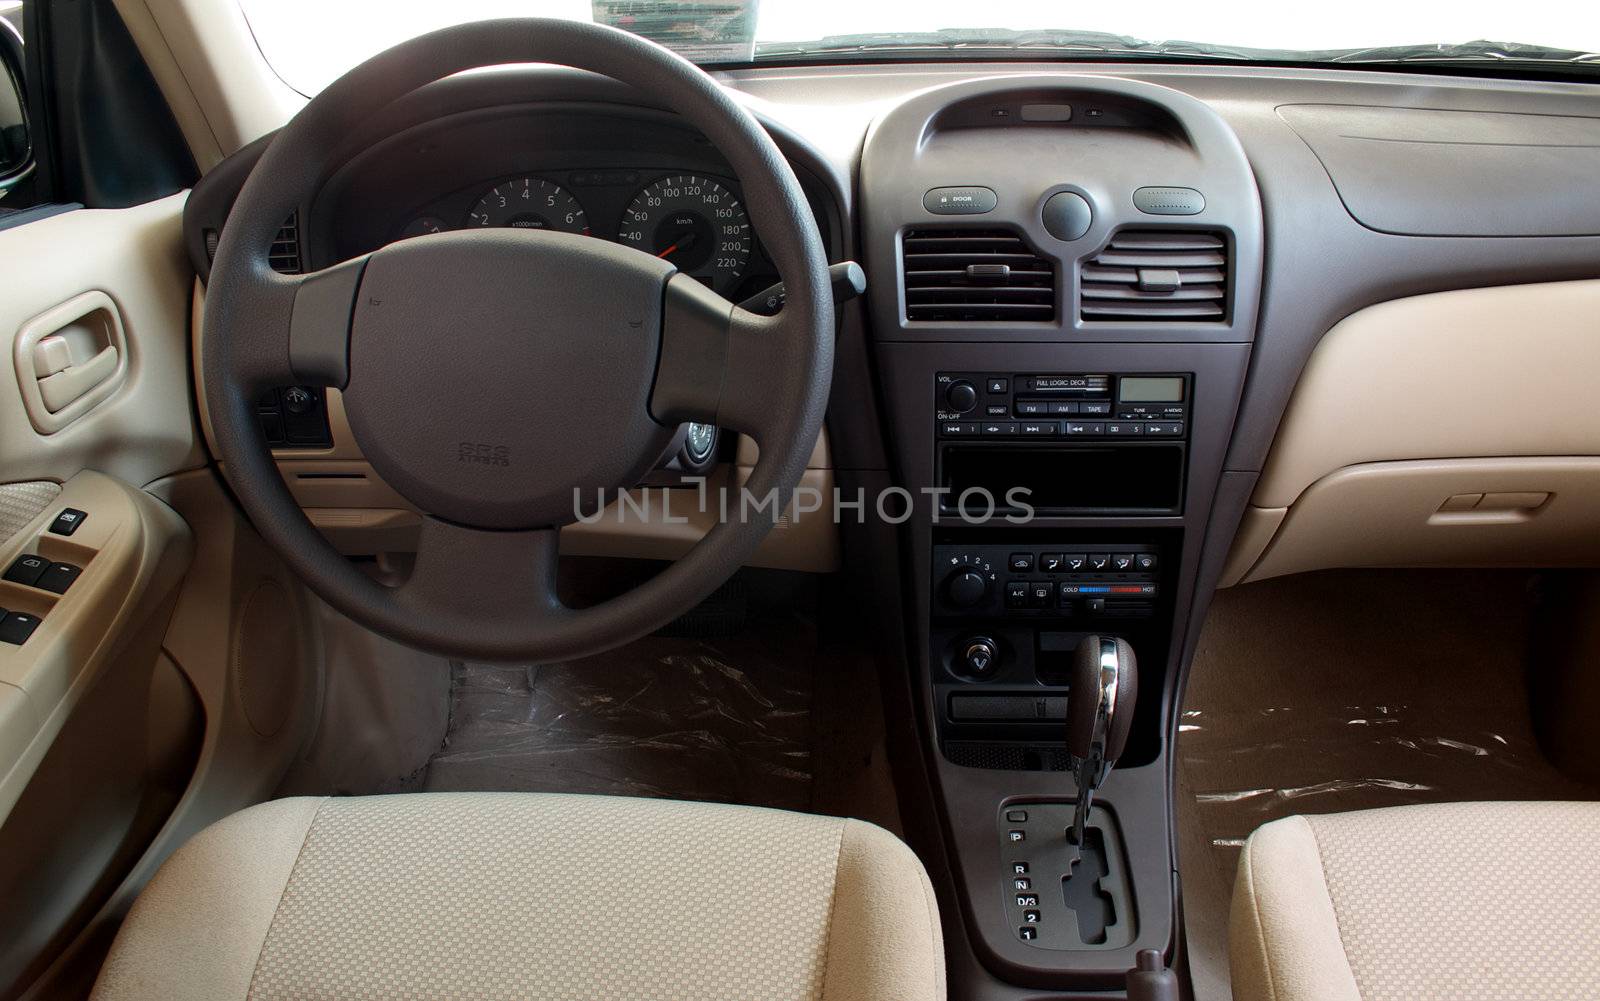 Interior of a car by Gdolgikh